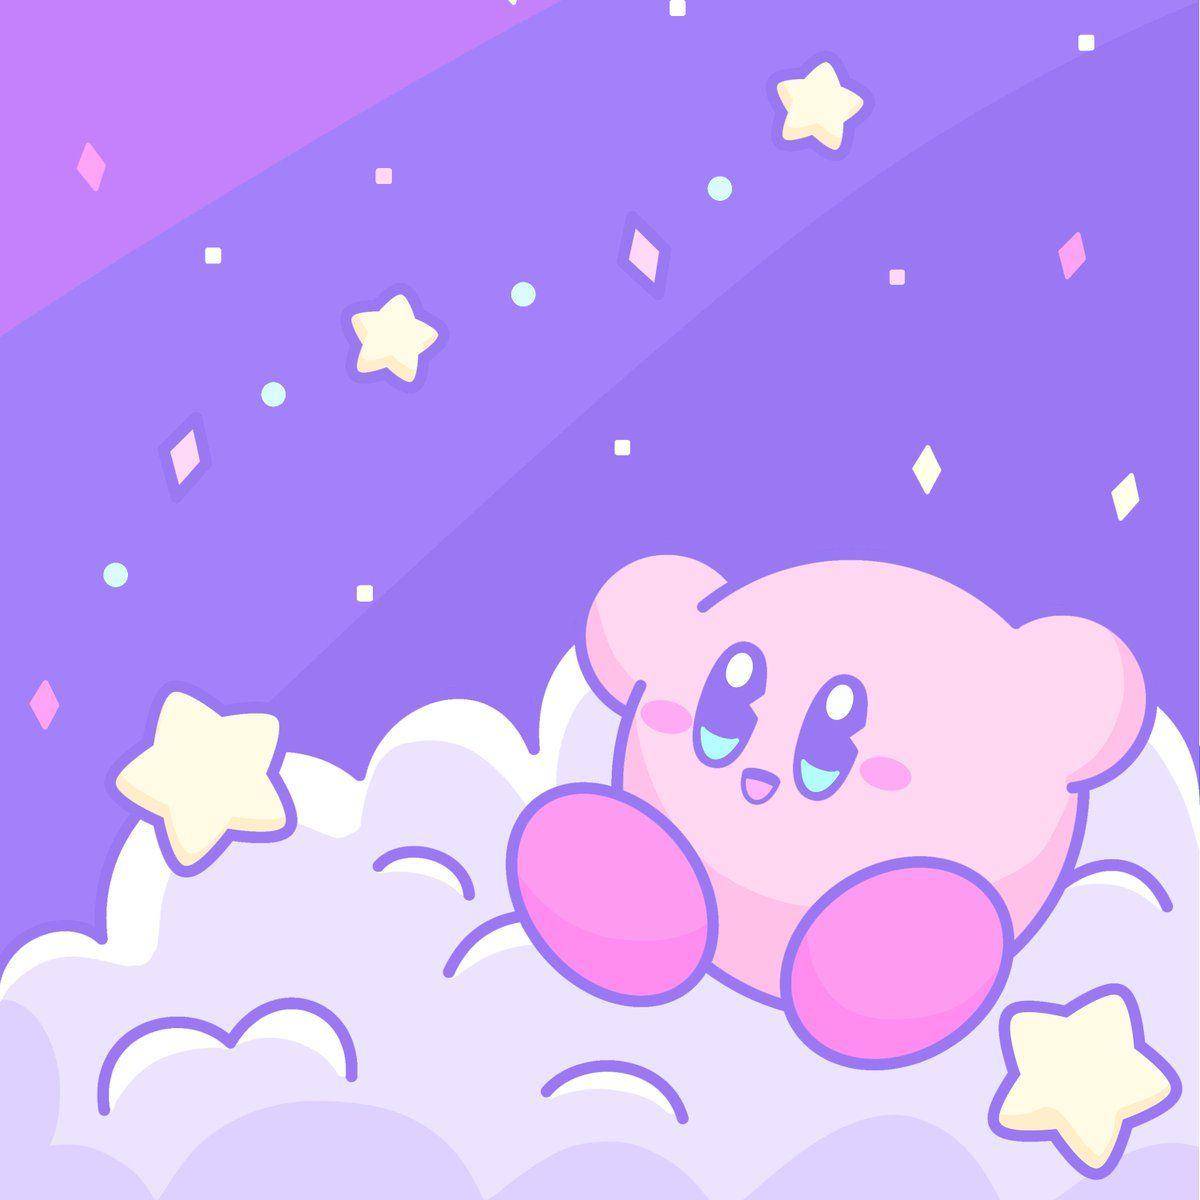 Tưởng tượng một máy tính với một bức hình nền Kirby màu tím thú vị, bạn sẽ cảm thấy thế nào? Đừng lo lắng, các tấm hình nền Kirby màu tím đẹp mắt đã được sưu tầm và tổng hợp trong bộ sưu tập Purple Kirby Wallpapers này. Hãy tải xuống và thưởng thức ngay bây giờ để trang trí máy tính của bạn thật lung linh.